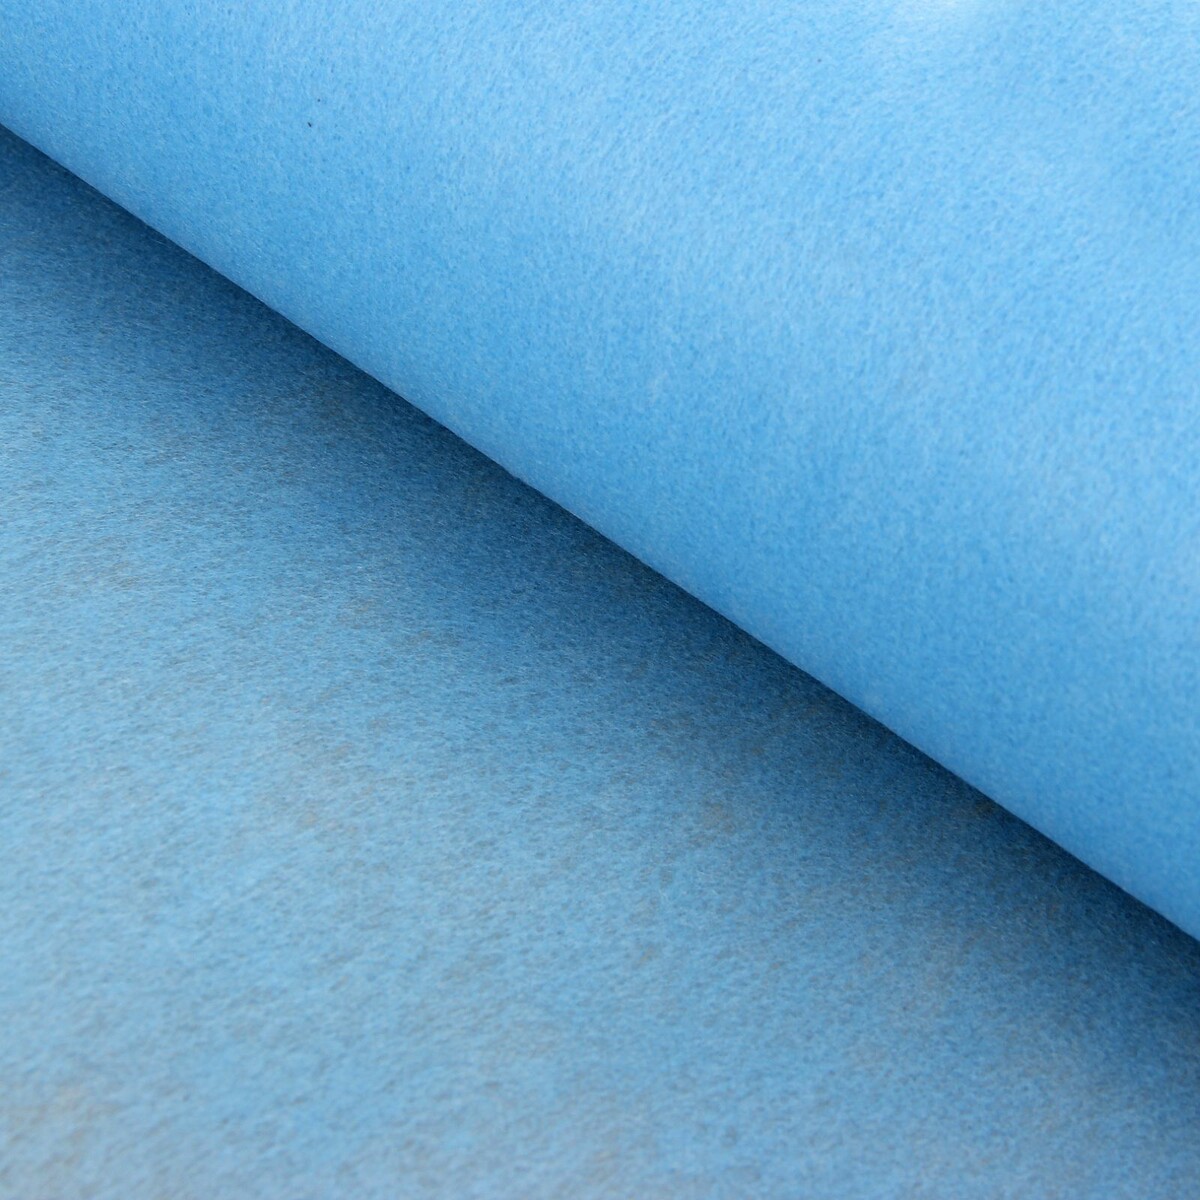 Фетр для упаковок и поделок, однотонный, голубой, двусторонний, рулон 1шт., 50 см x 15 м фетр для упаковок и поделок однотонный салатовый зеленый двусторонний рулон 1шт 0 5 x 20 м